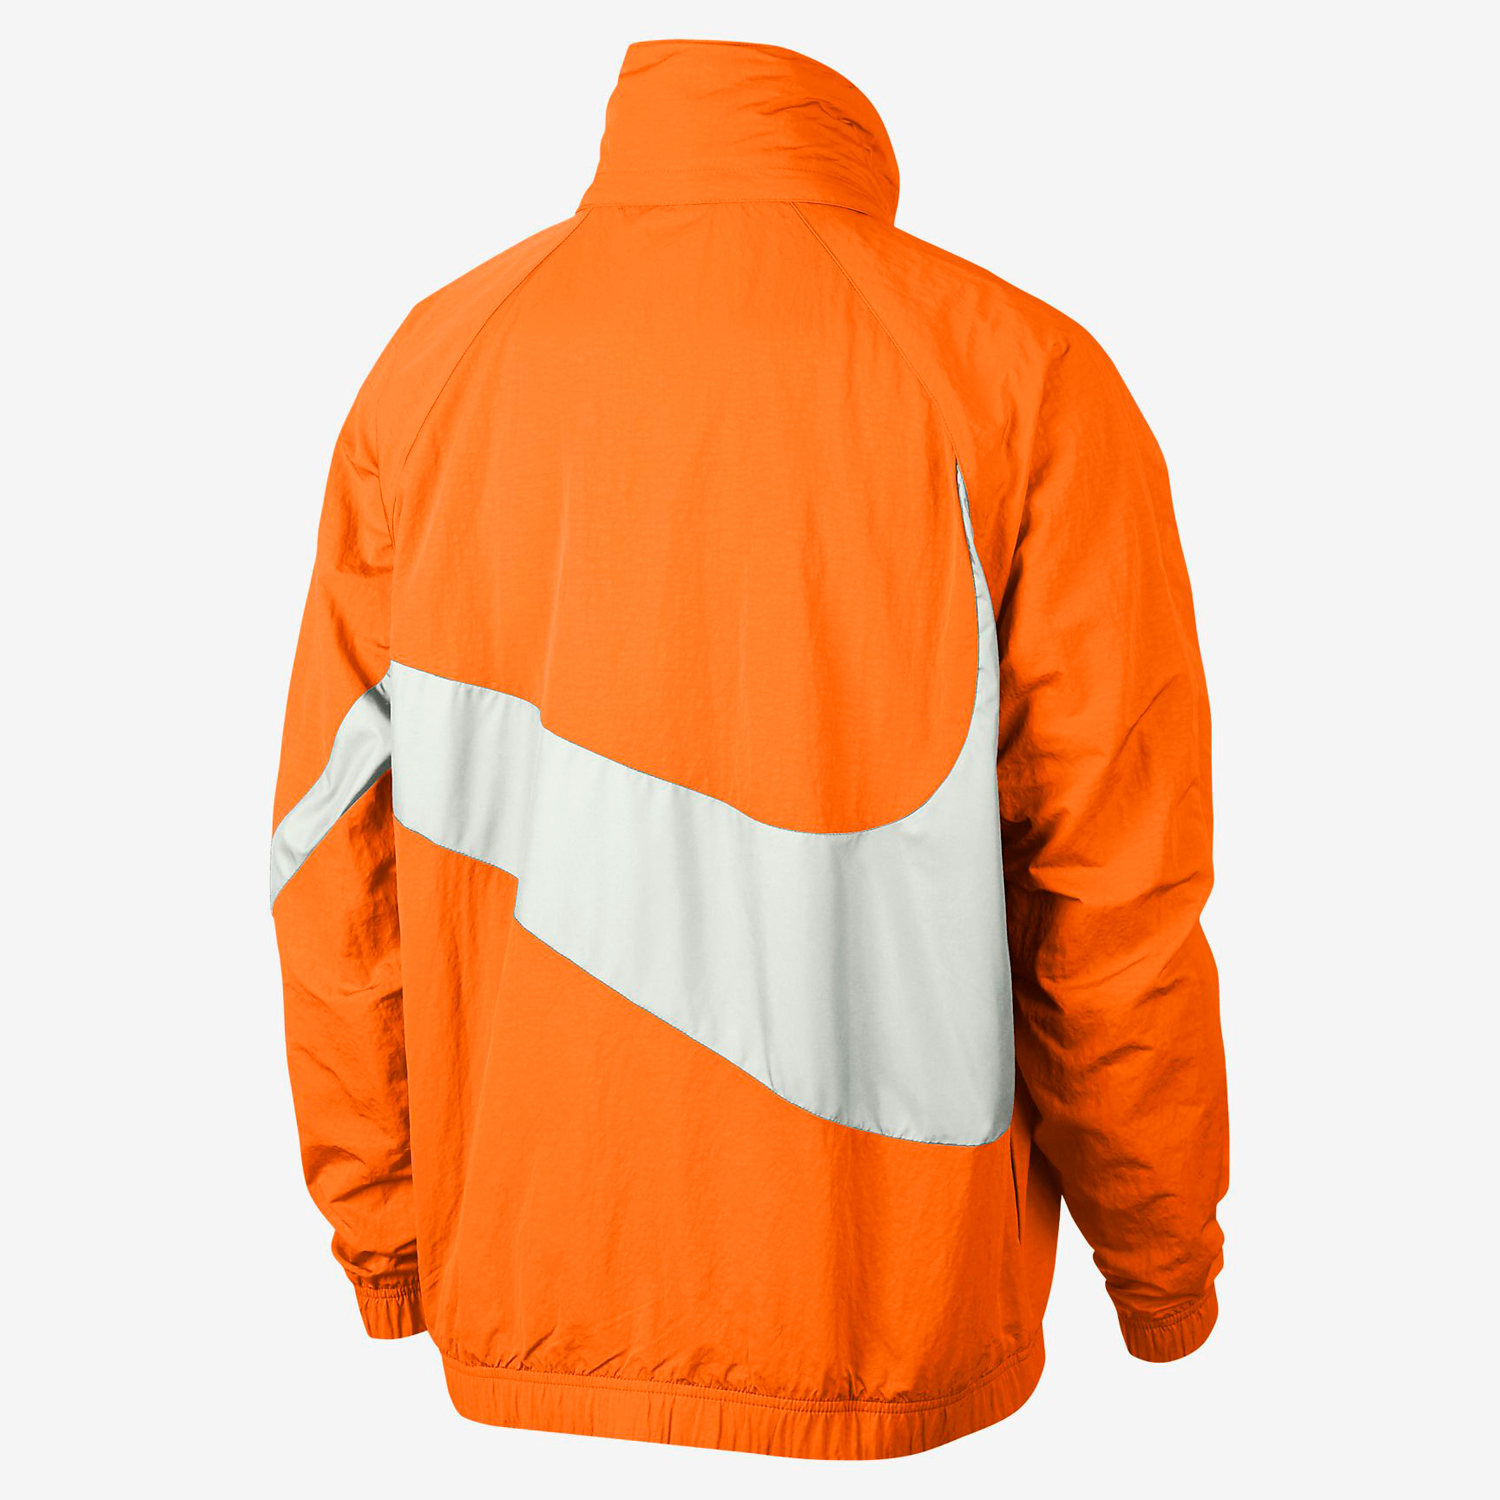 nike total orange clothing